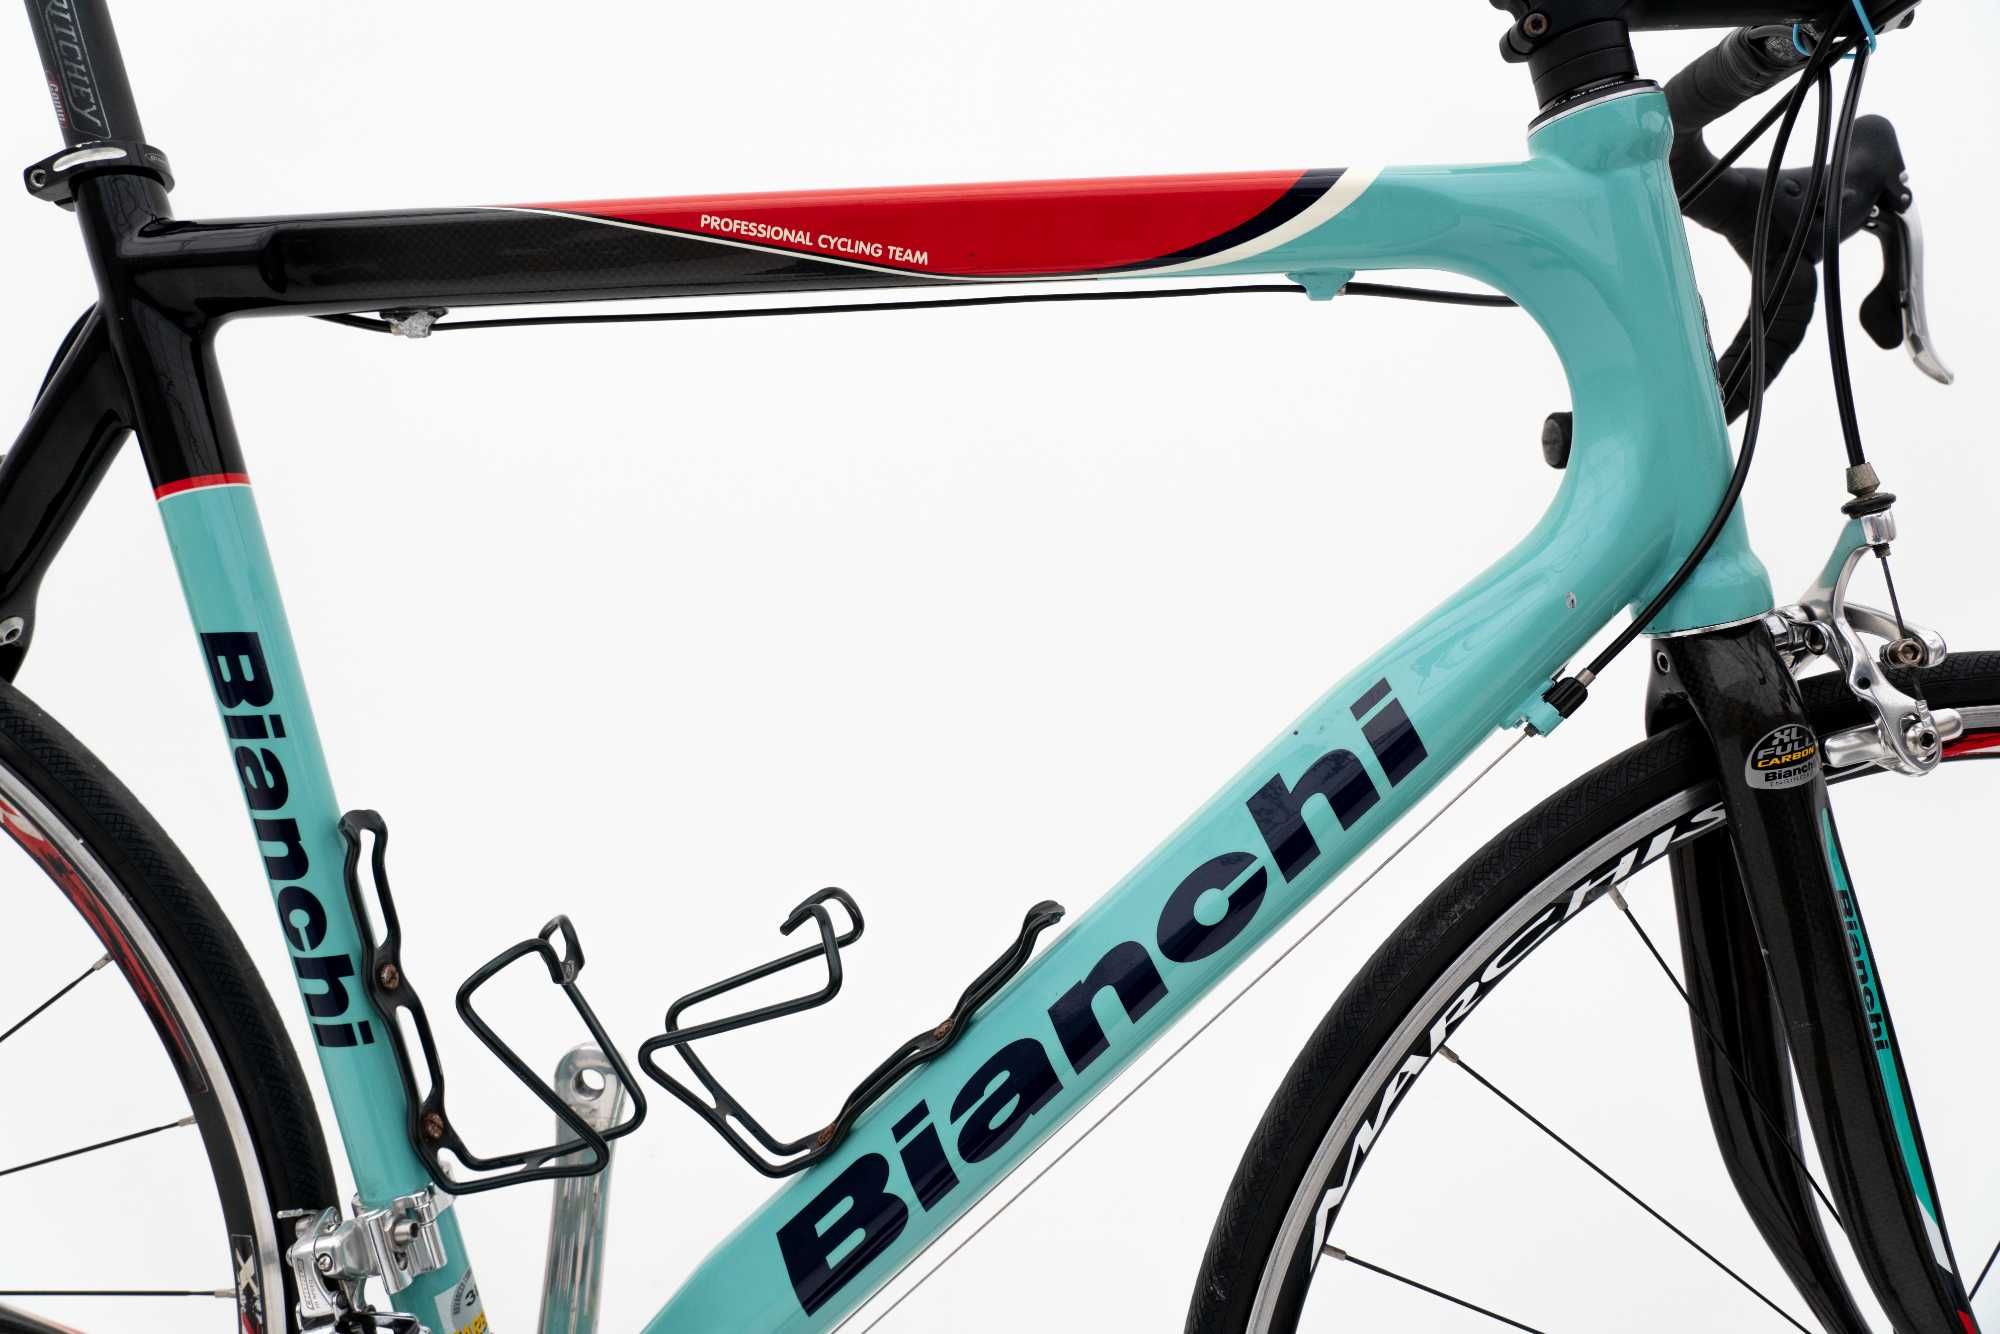 Rower szosowy Bianchi w kolorze Celeste